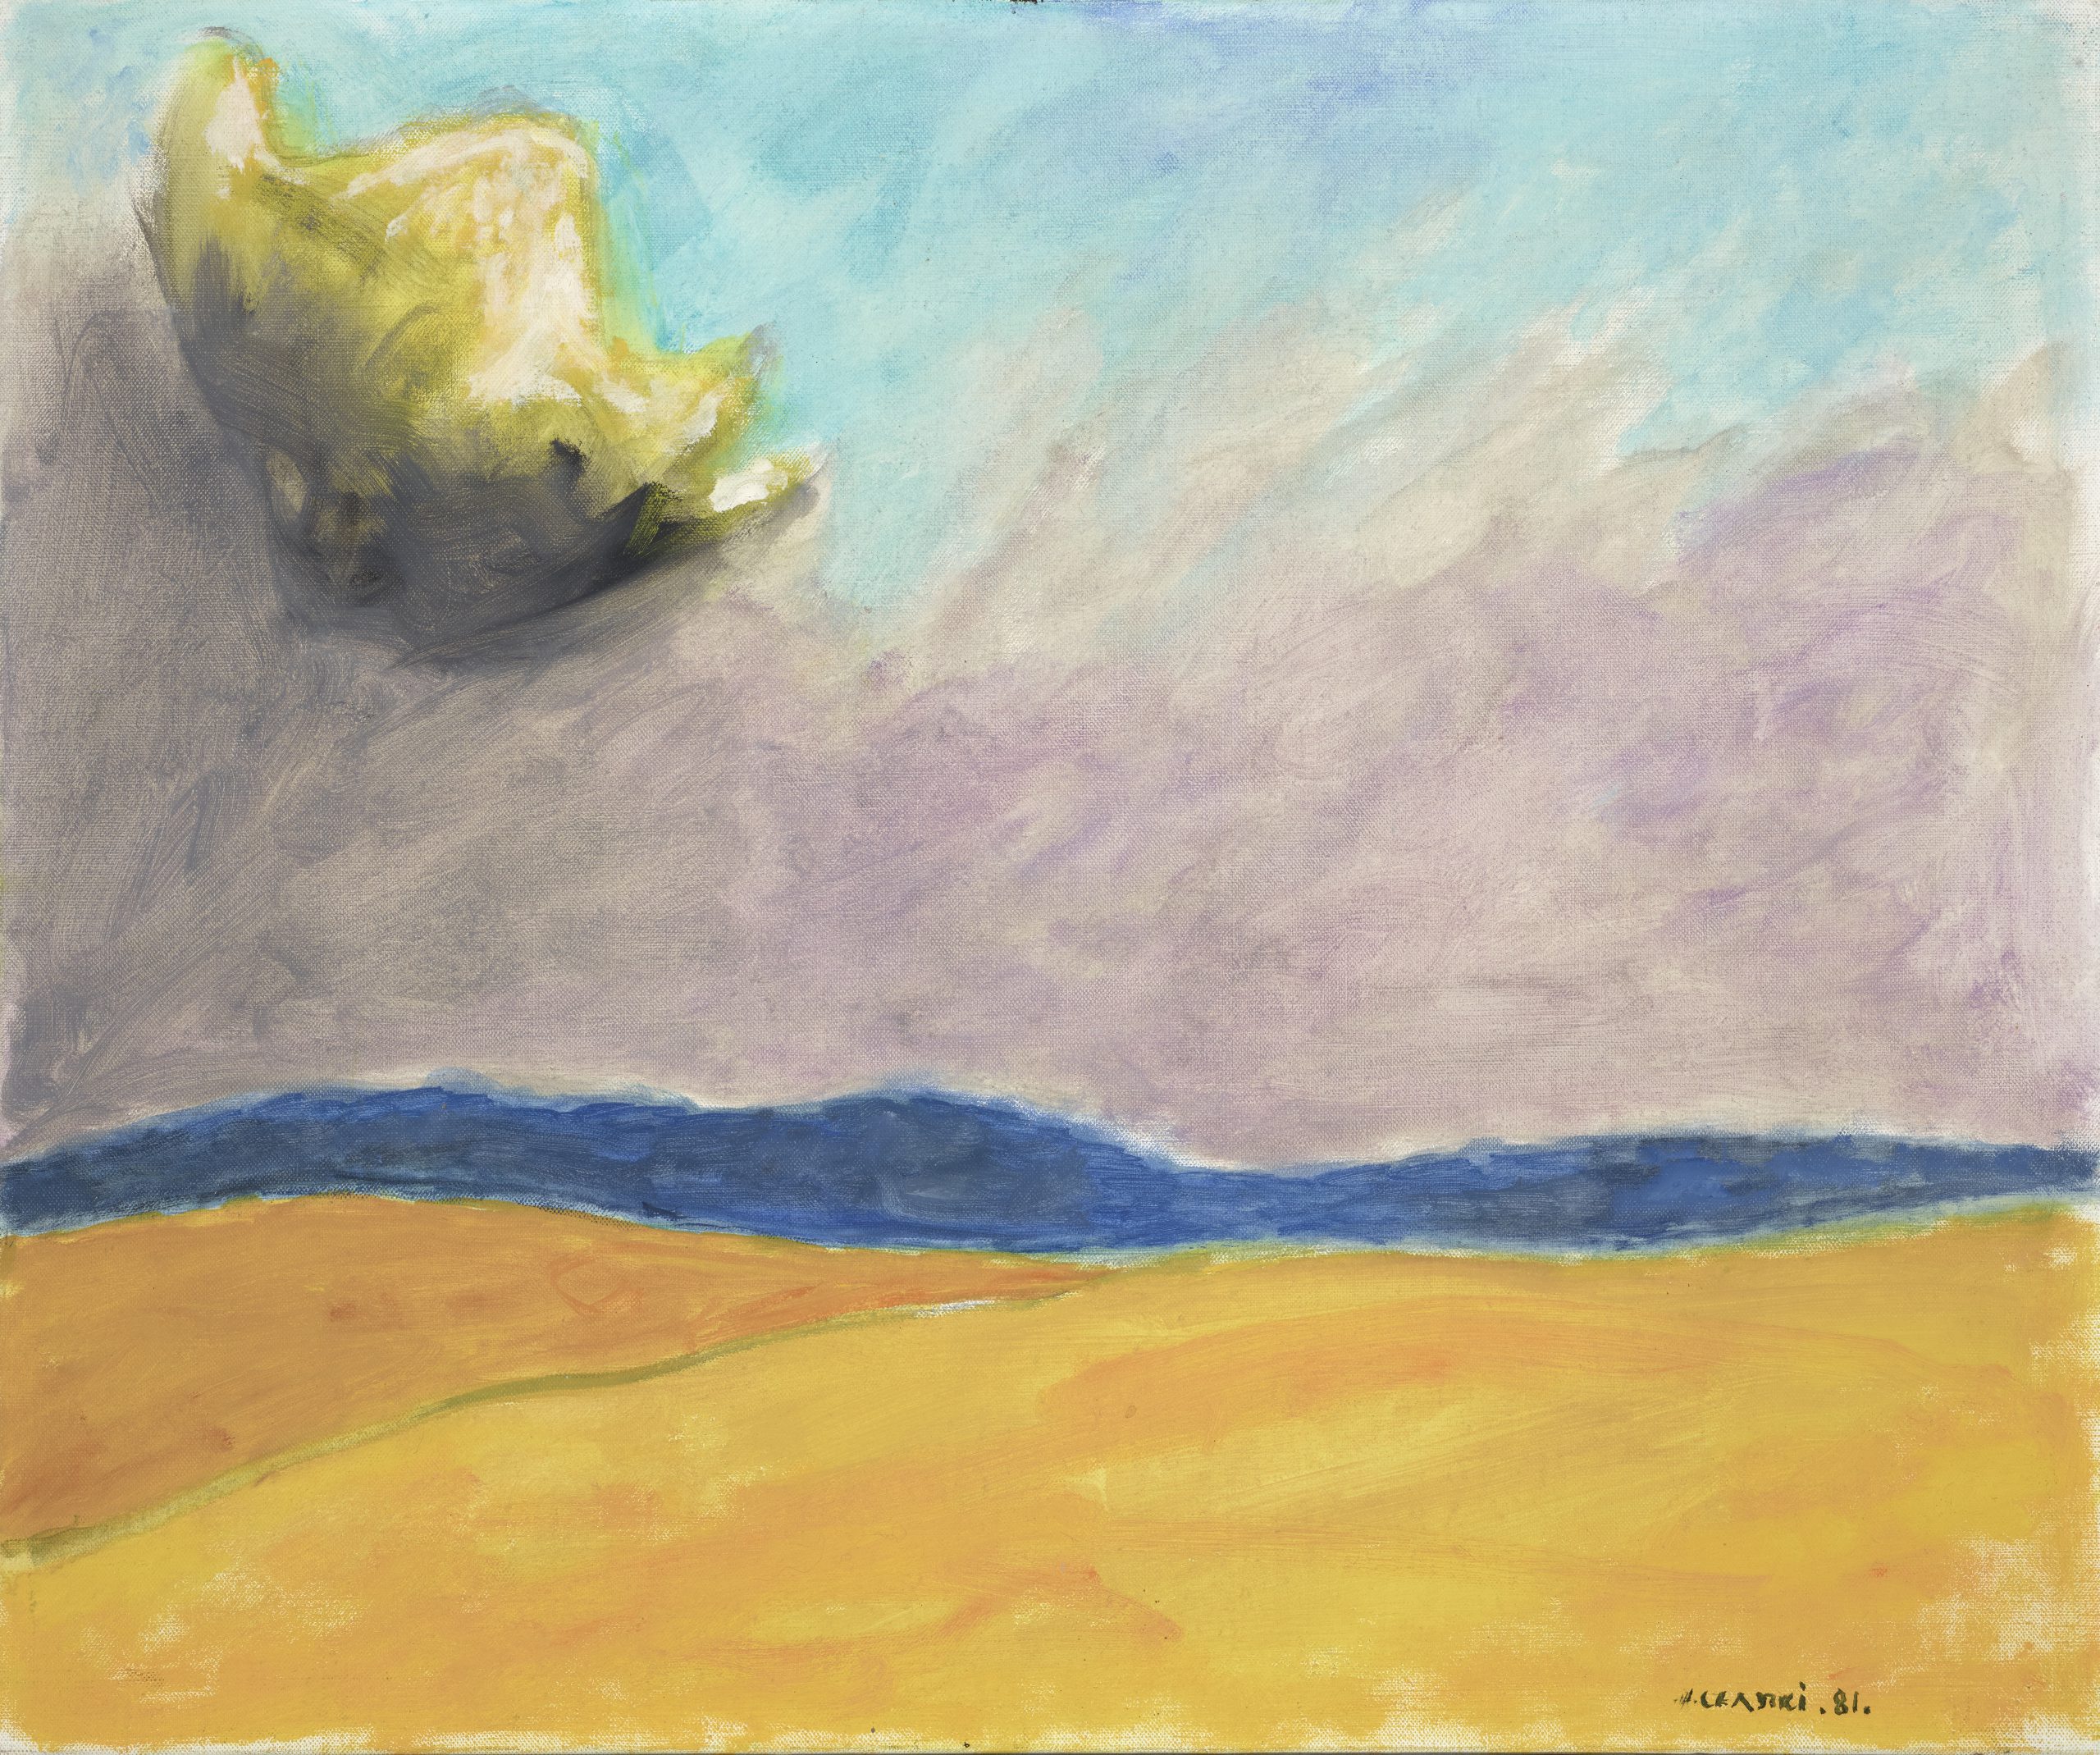 Obraz przedstawiający widok krajobrazu bez punktów charakterystycznych nad którym unosi się tytułowa chmura. Józef Czapski, Nuage èclatè [Lśniąca chmura], 1981, technika olejna, 54 cm x 65 cm